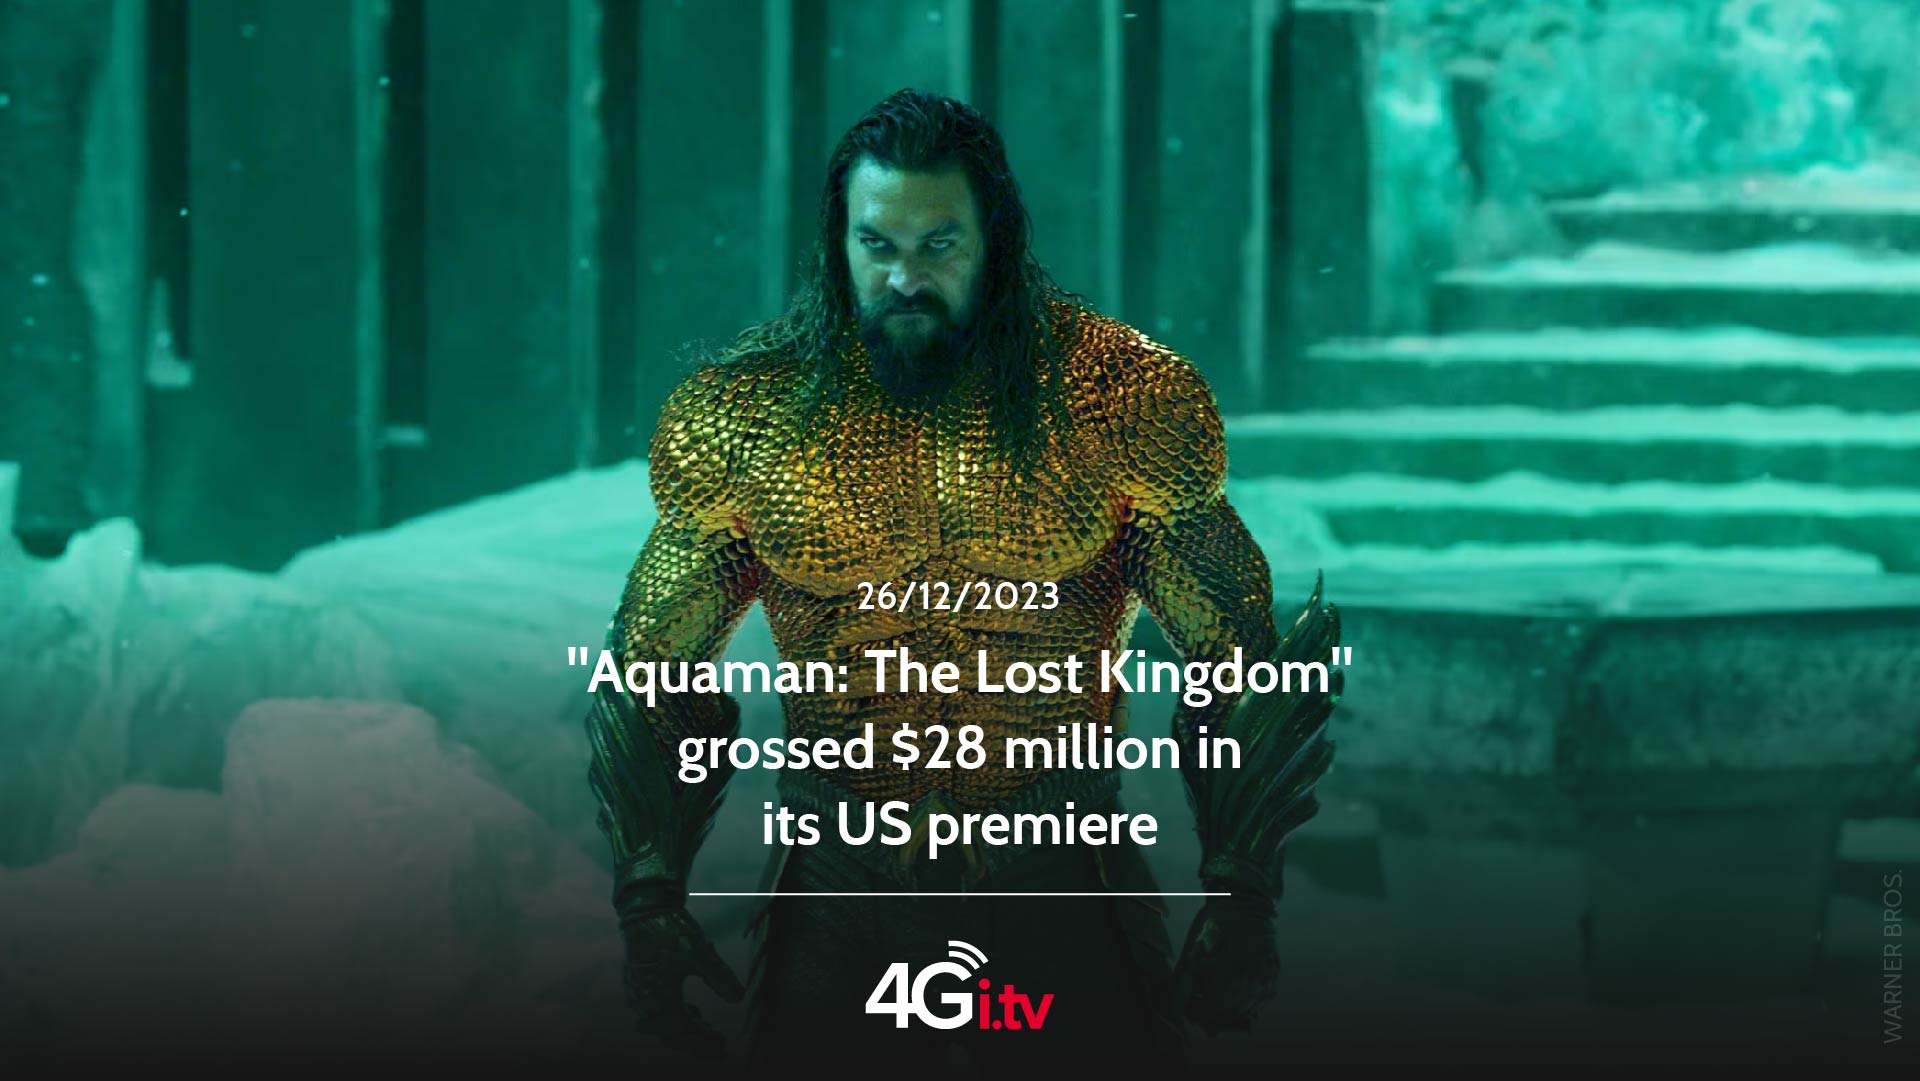 Lesen Sie mehr über den Artikel “Aquaman: The Lost Kingdom” grossed $28 million in its US premiere